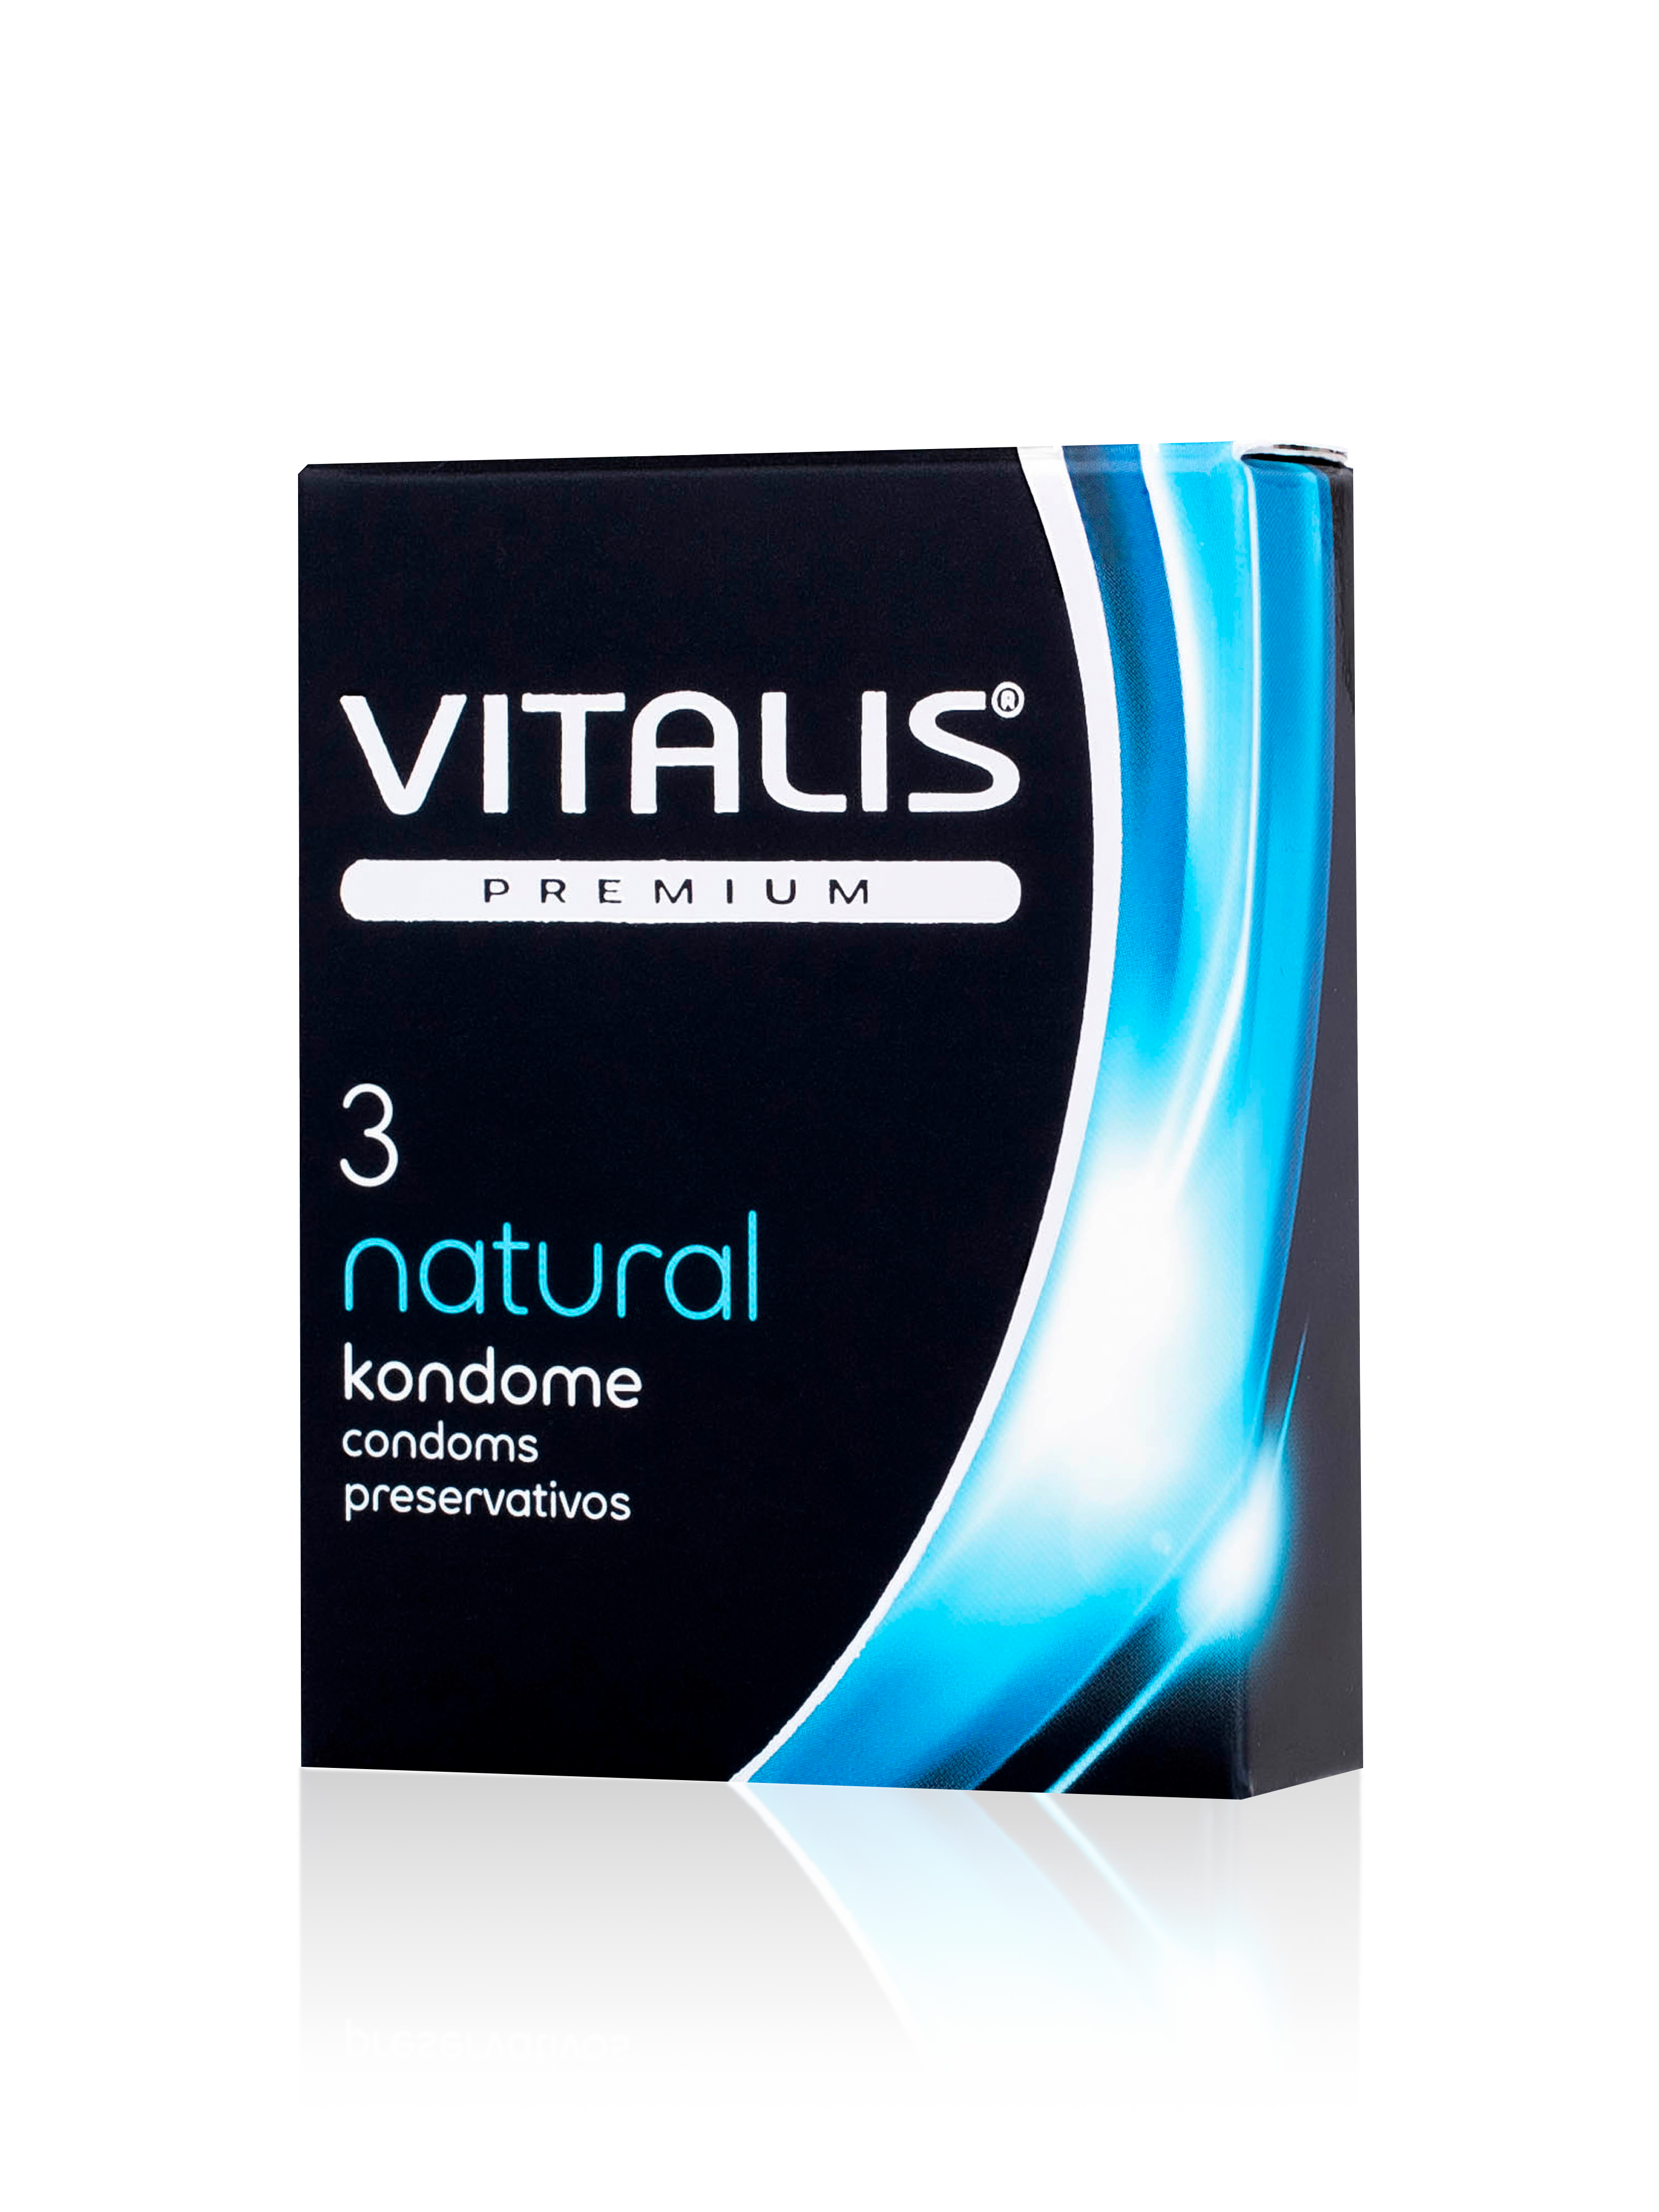 Презервативы "VITALIS" PREMIUM №3 natural